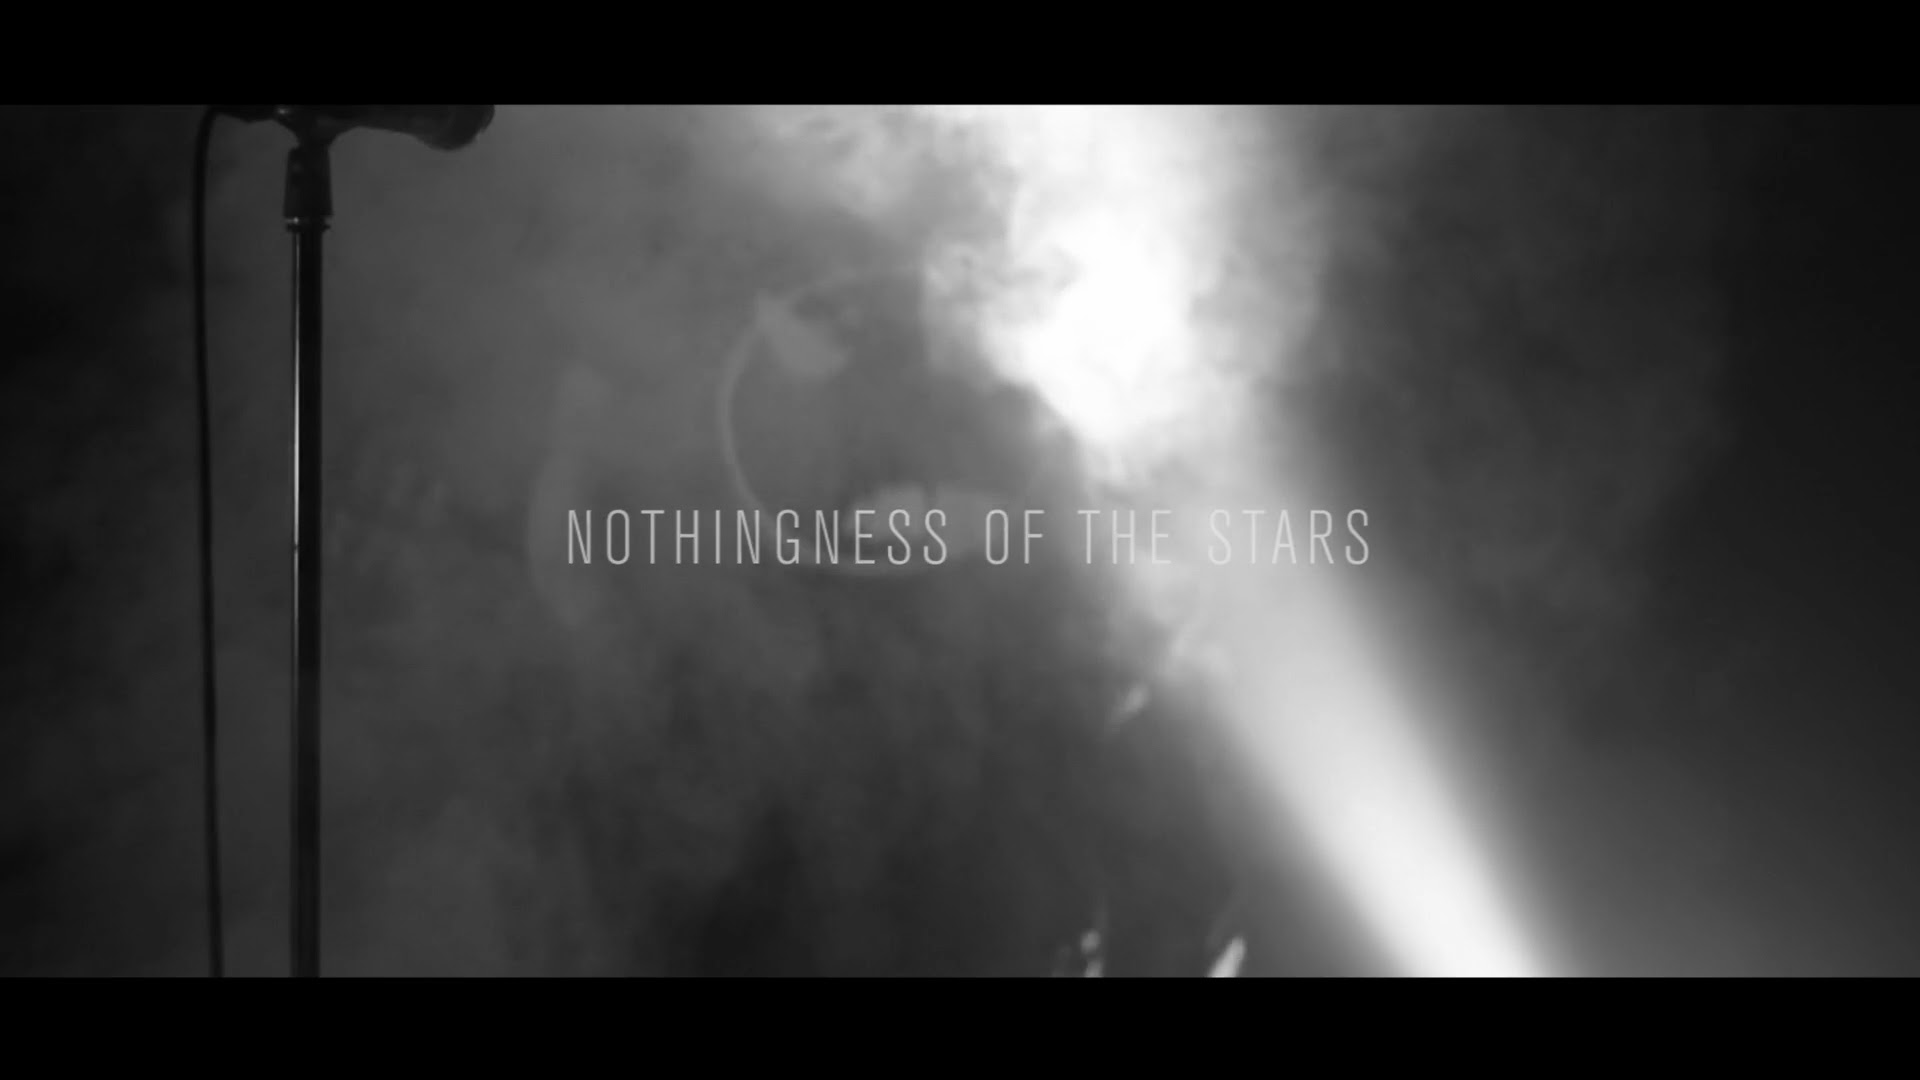 TPTFF’20 tudengifilmi kategooria võitjaks osutus “PEDIGREE – Nothingness Of The Stars”!